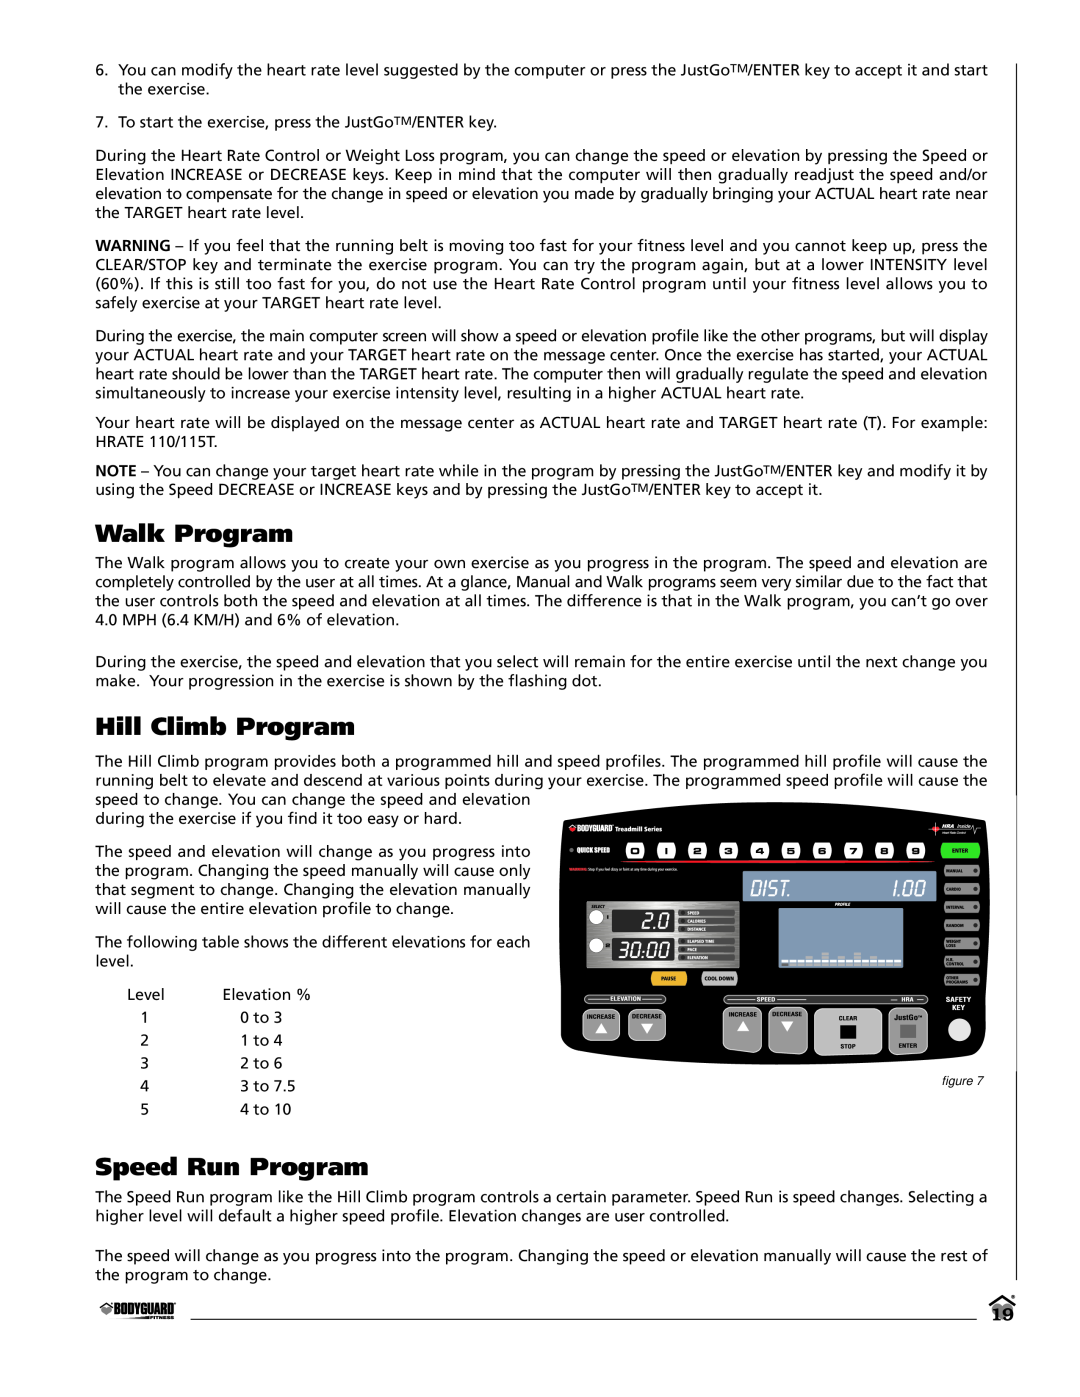 Bodyguard T280C, T320, LT280P manual Walk Program, Hill Climb Program, Speed Run Program 